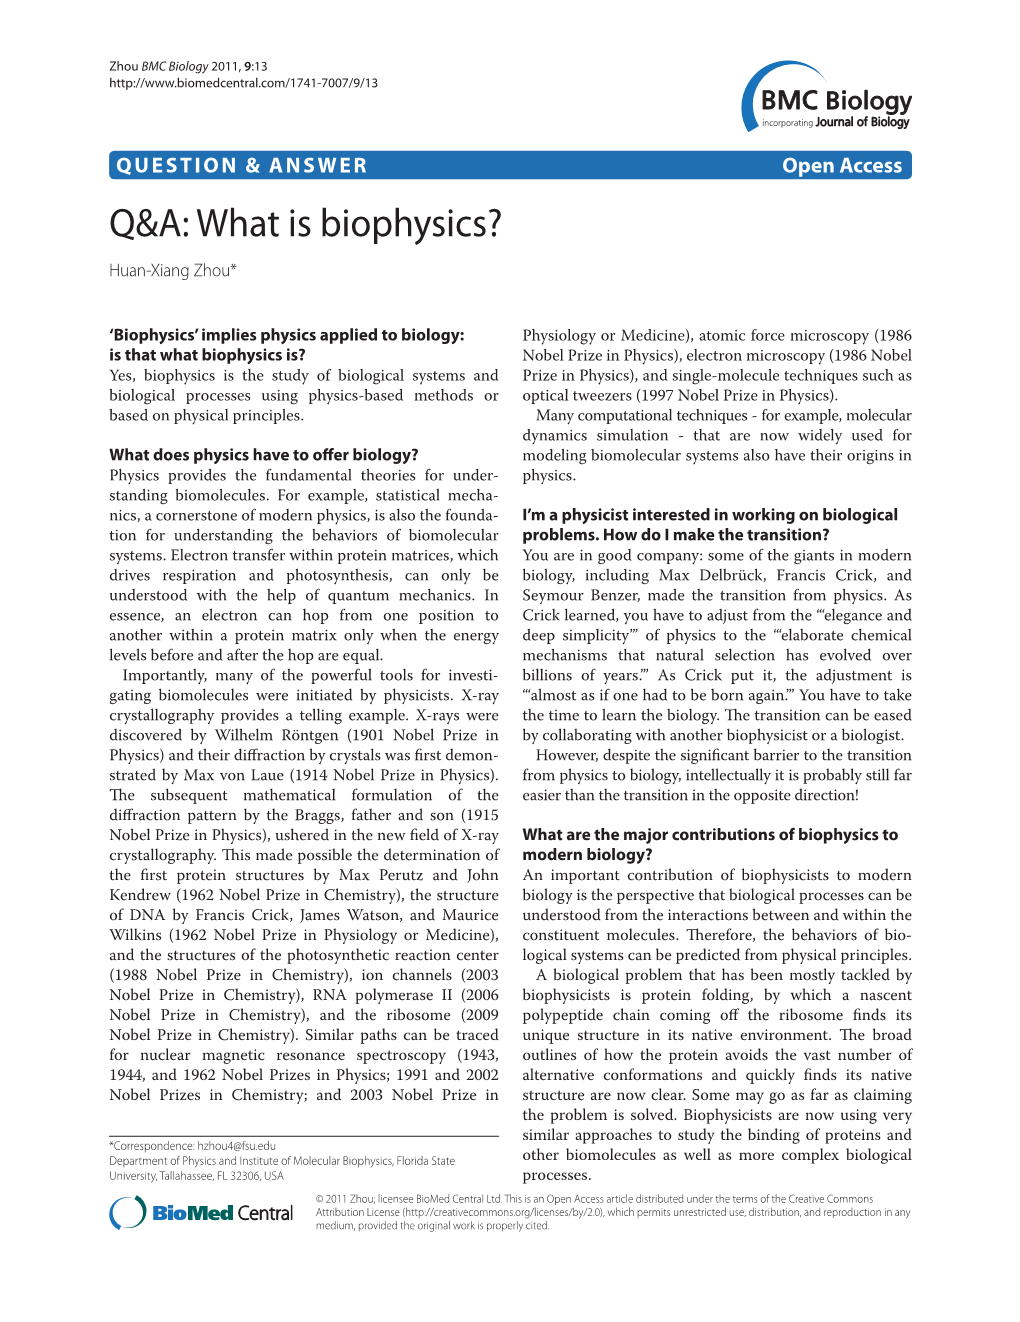 Q&A: What Is Biophysics?